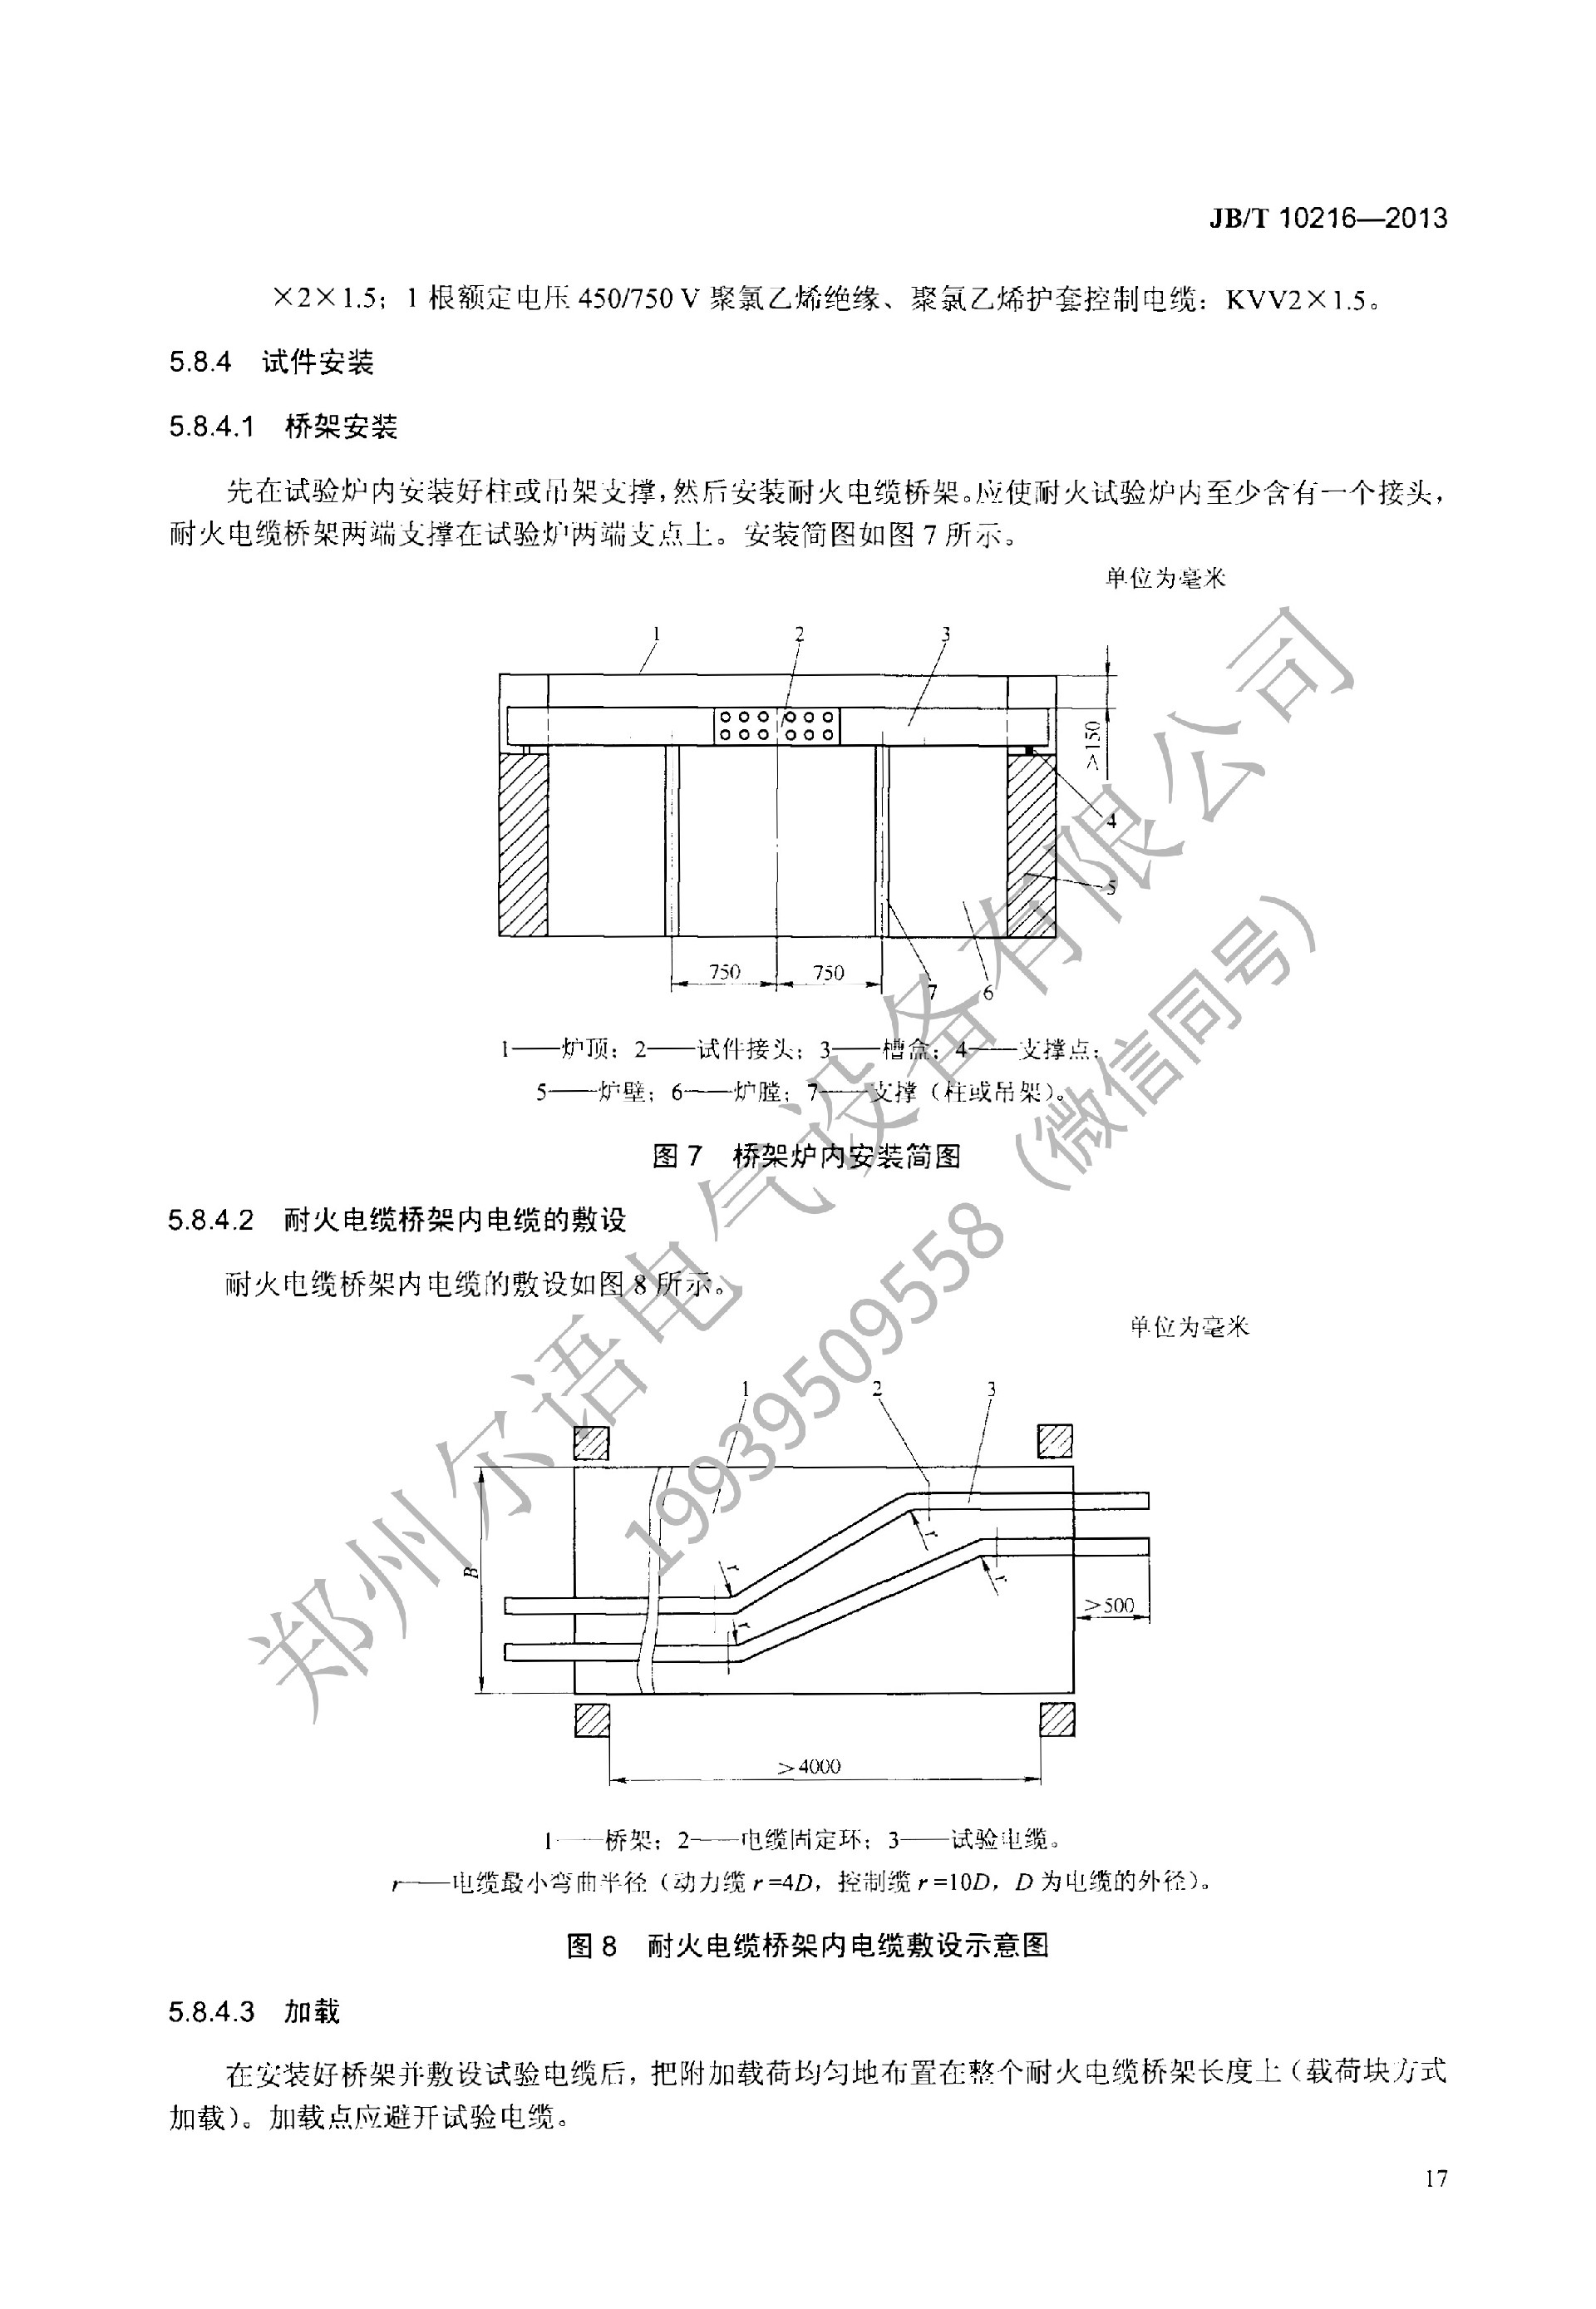 JBT-10216-2013-电控配电用电缆桥架(1)(1)--加水印-21.jpg